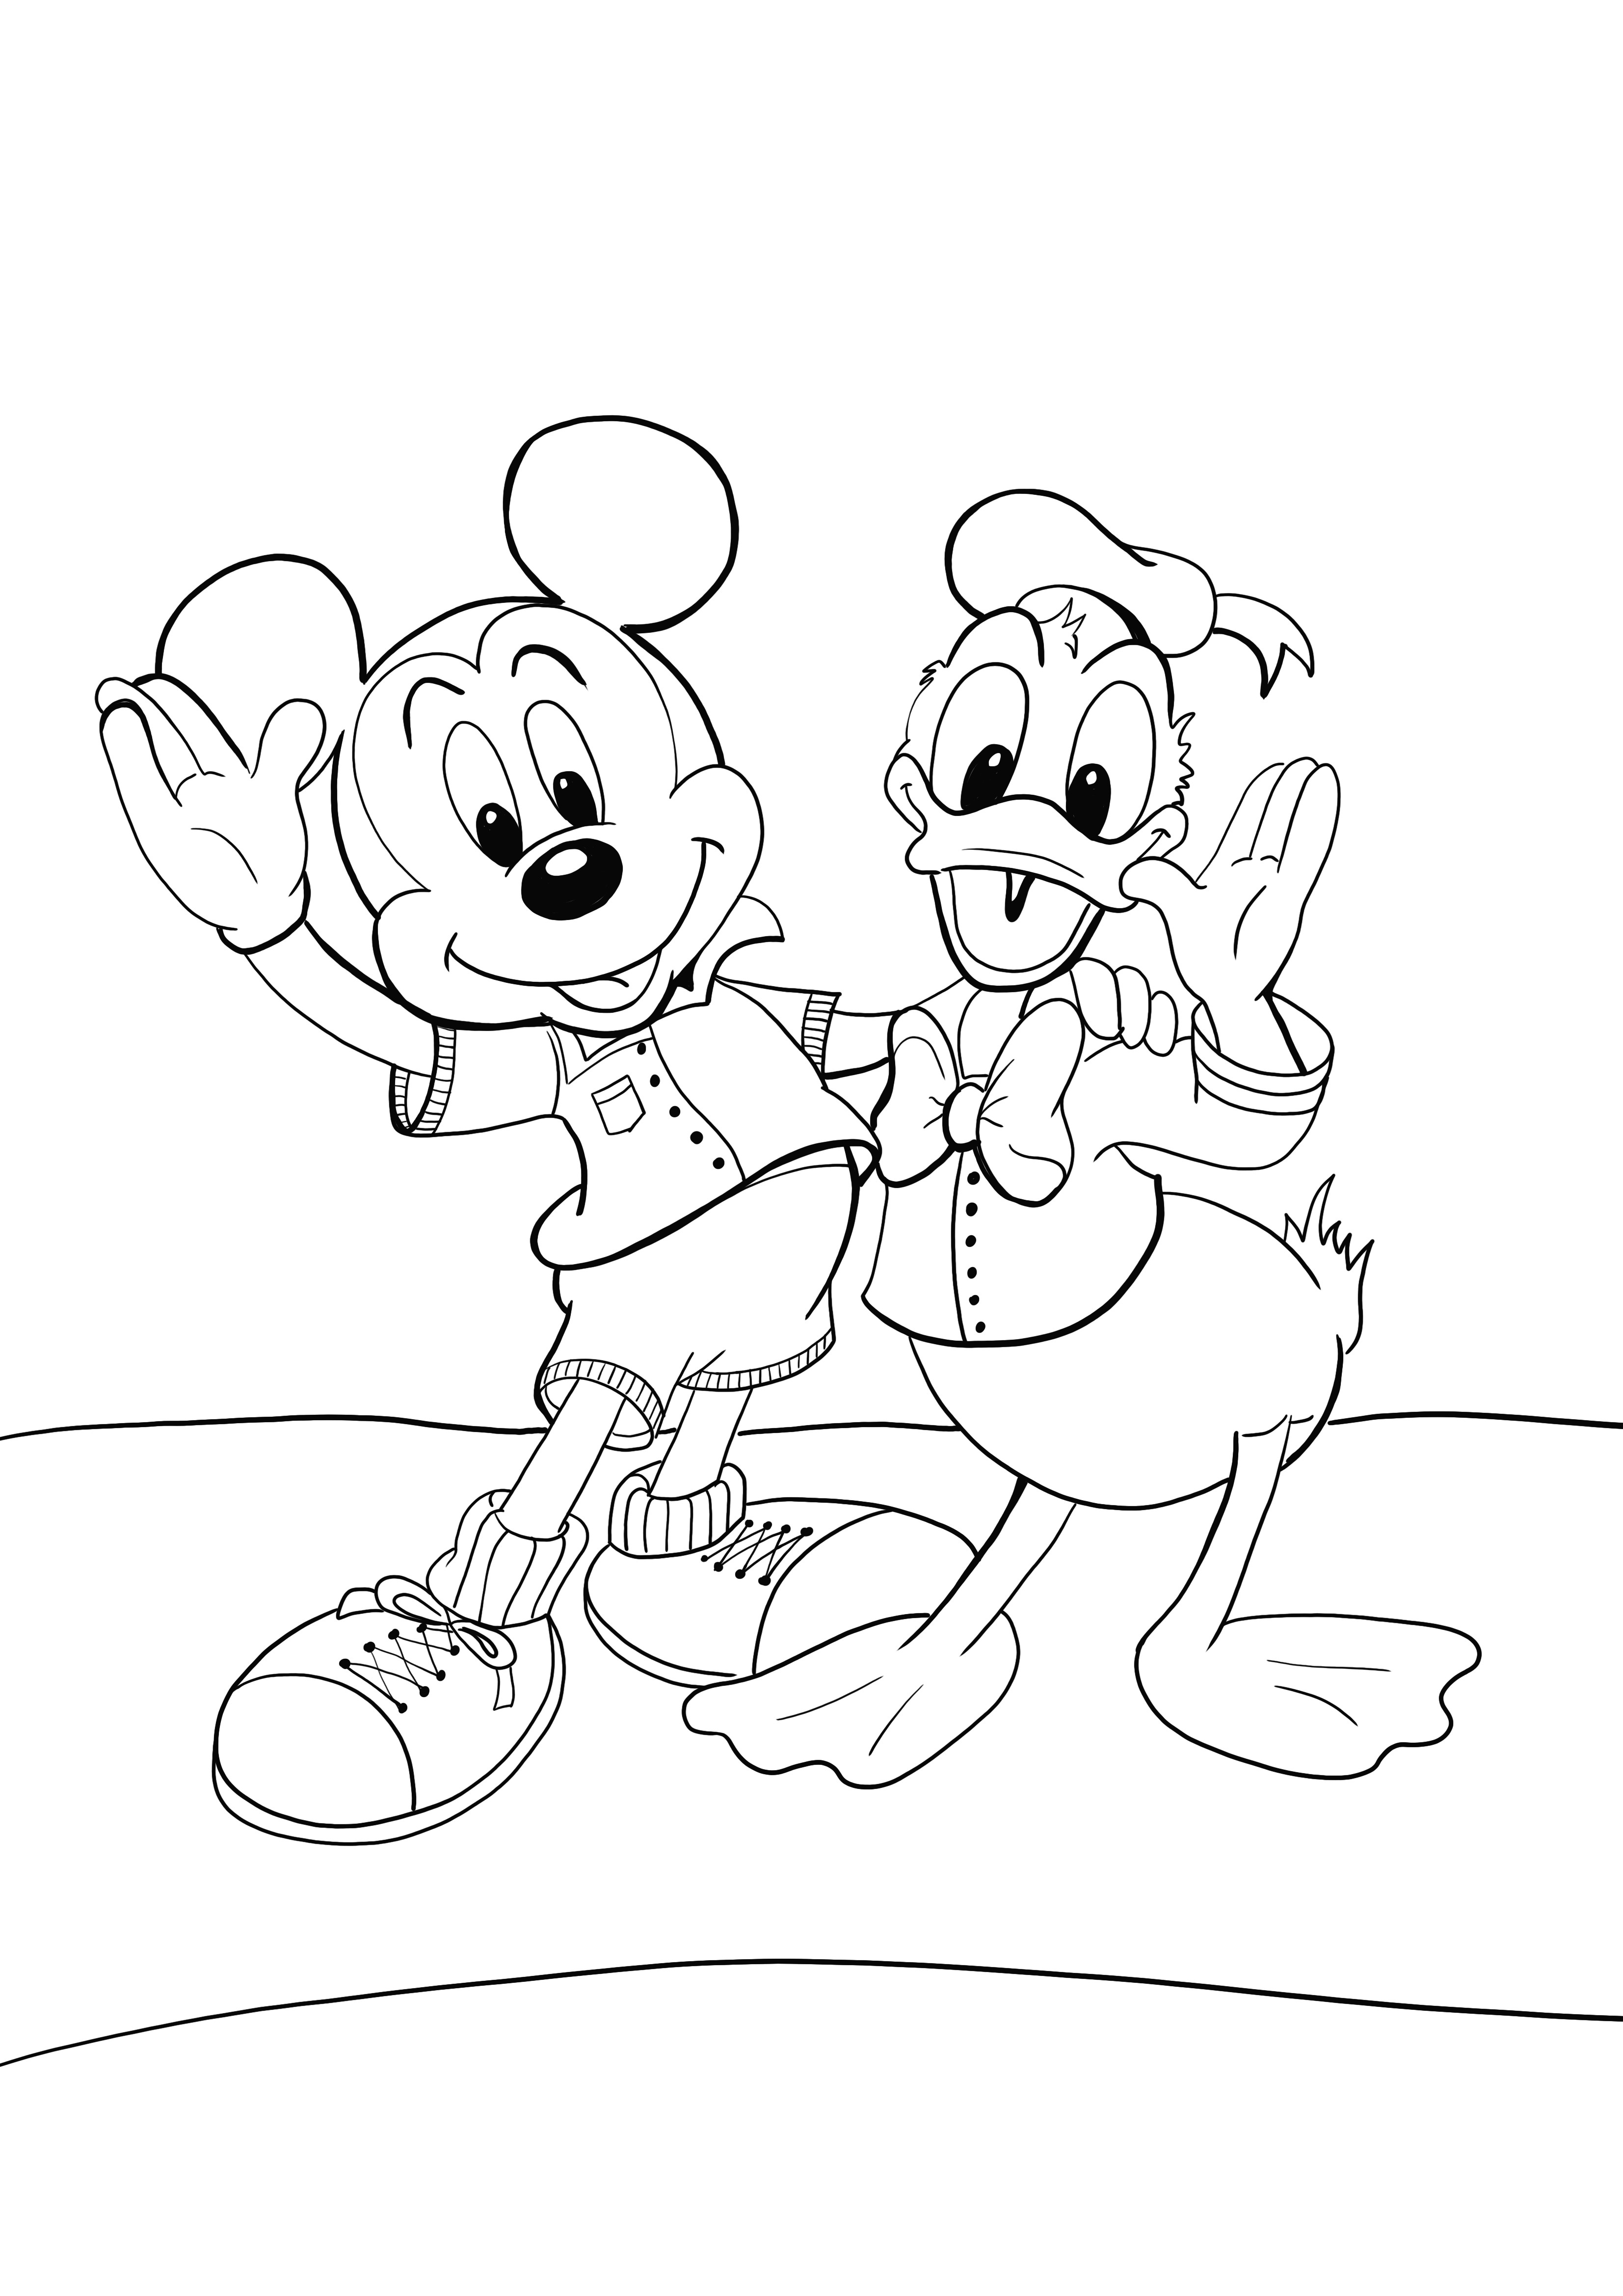 Imagem favorita de Mikey e Donald para colorir gratuitamente